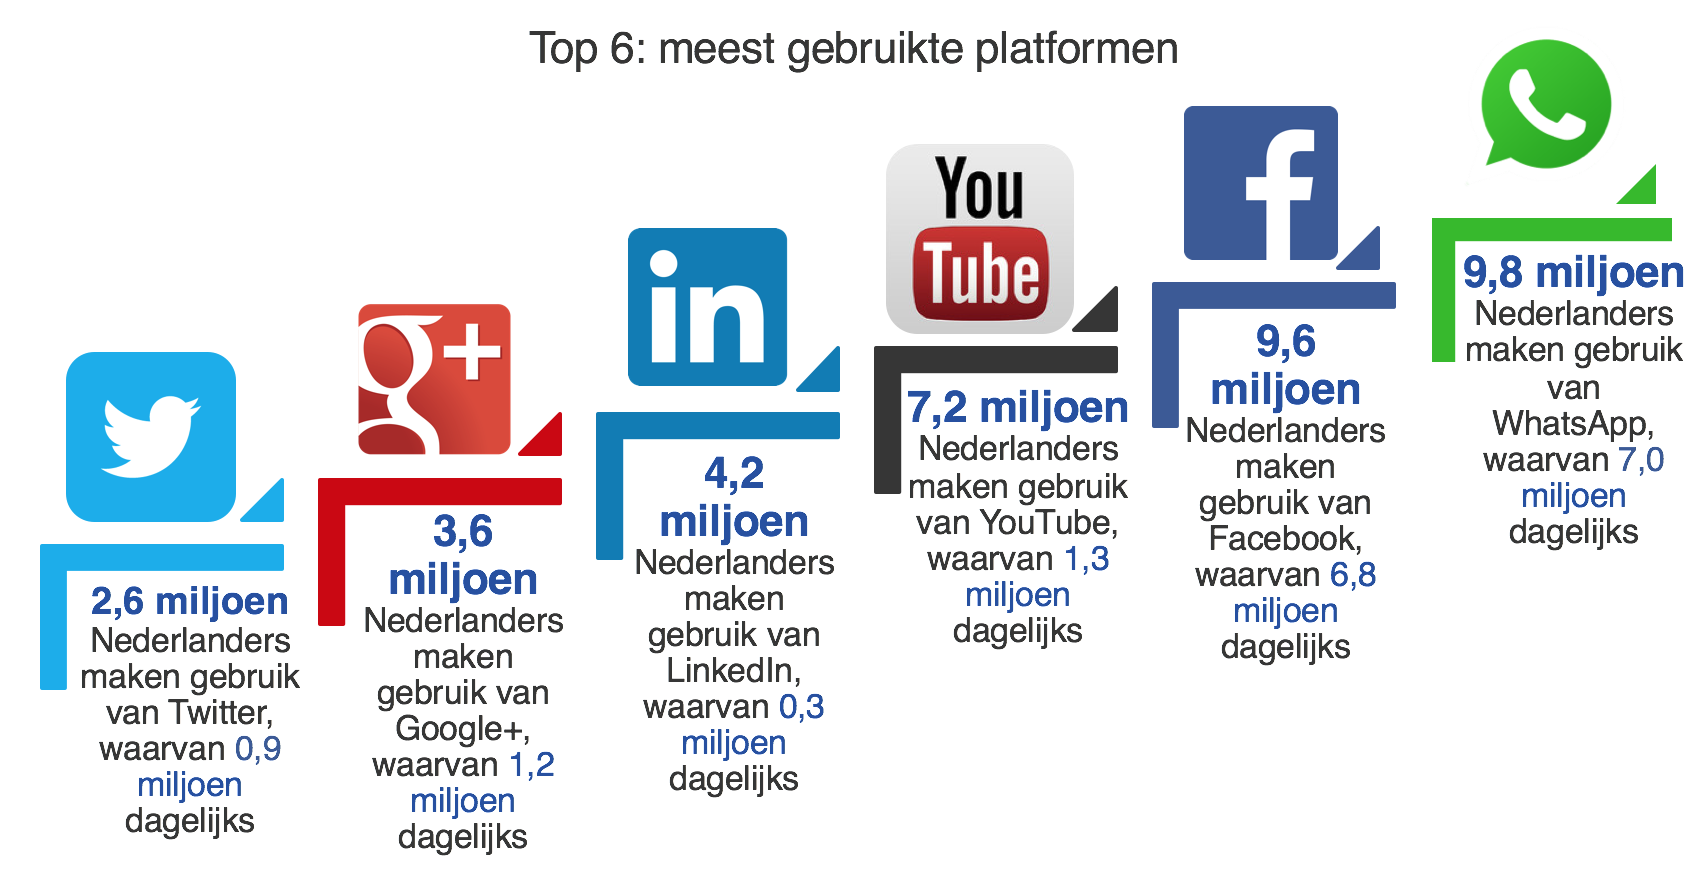 top 6 meeste gebruikte social media platforms - Marketingfacts